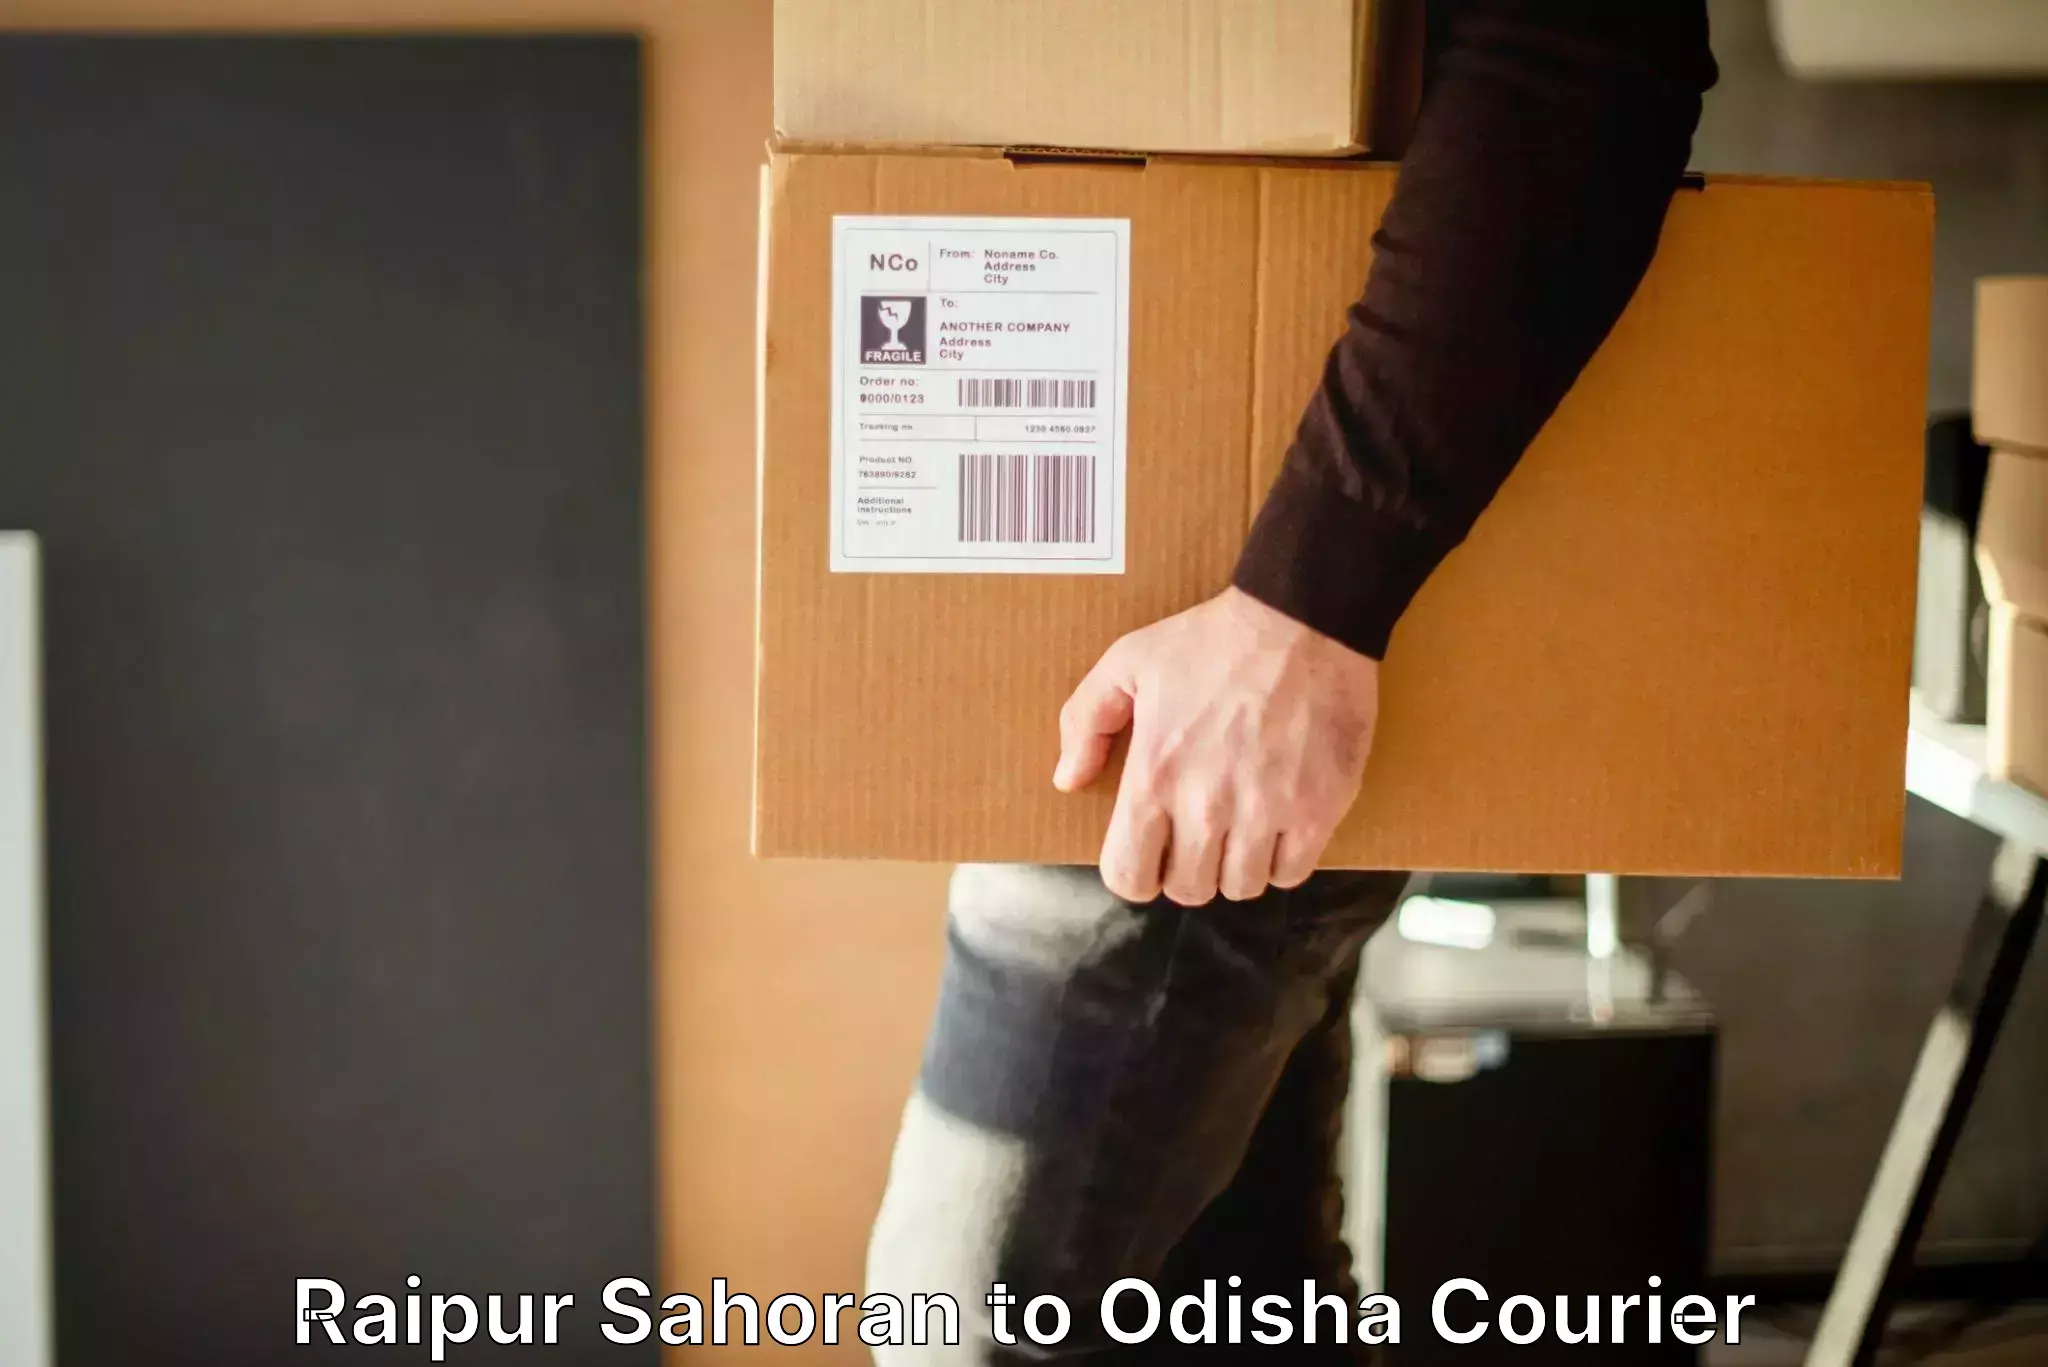 Luggage dispatch service Raipur Sahoran to Puri